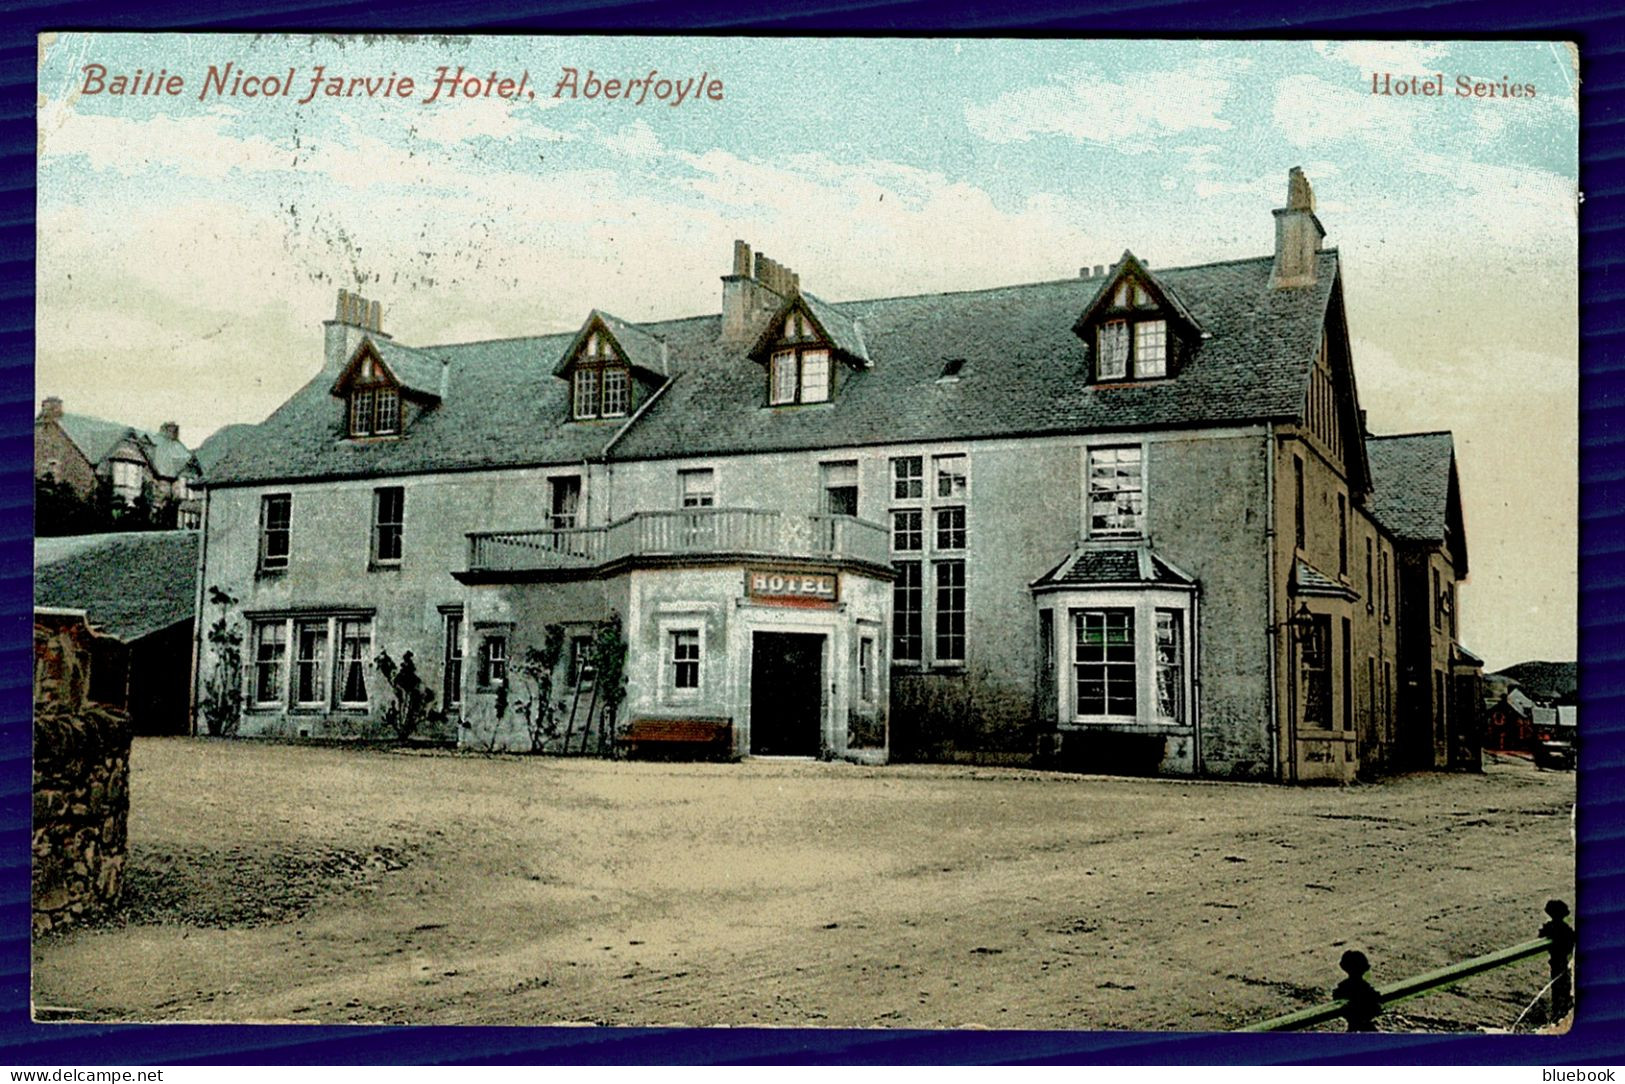 RB 1634 - 1909 Postcard - Bailie Nicol Jarvie Hotel Aberfoyle Moray - To New Zealand - Moray